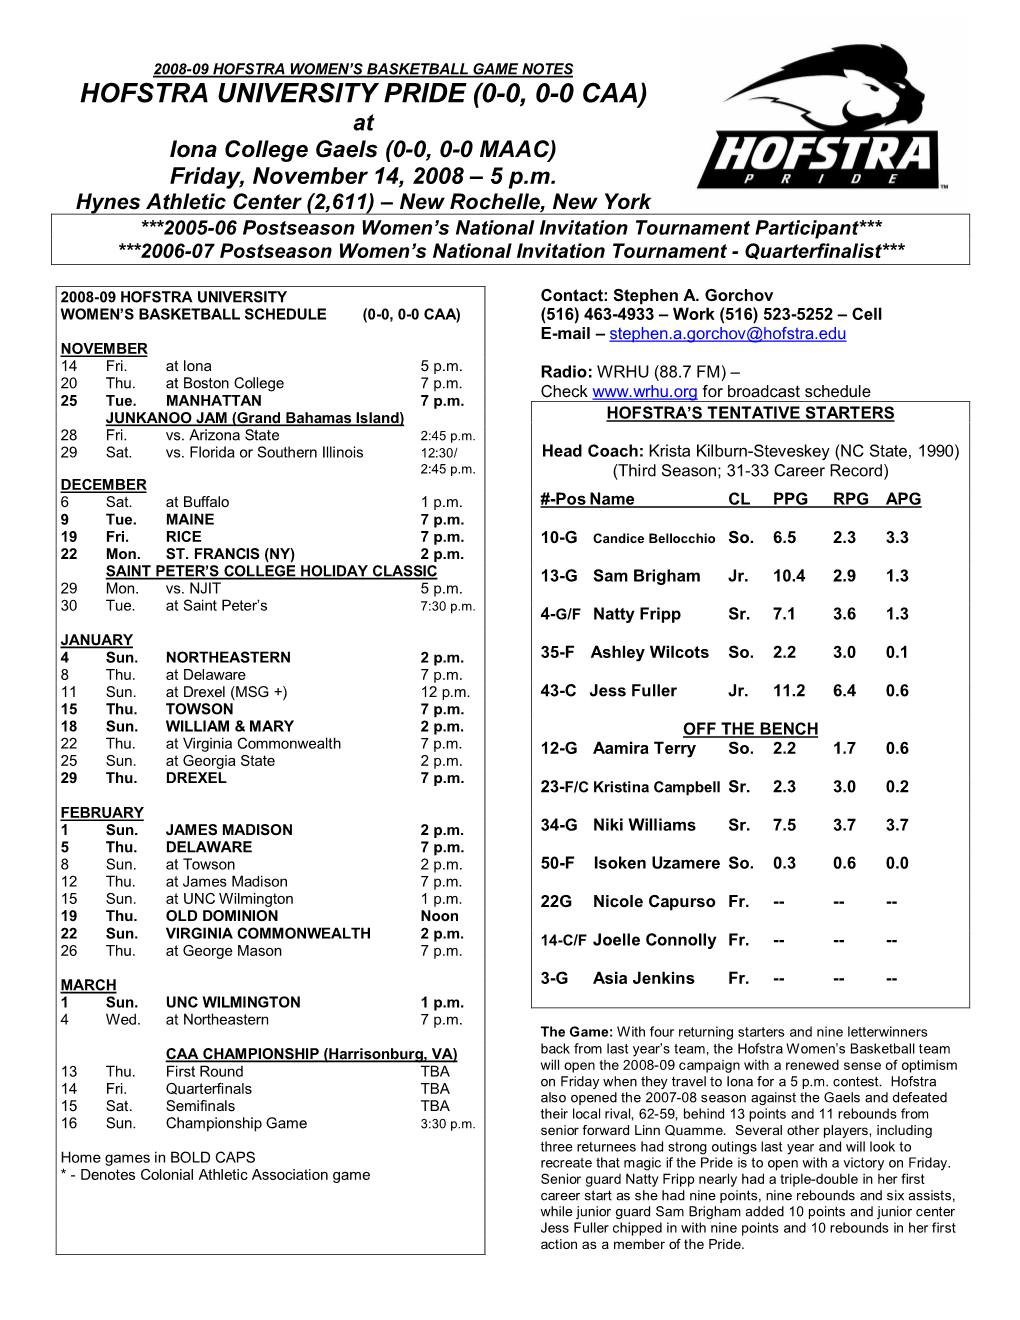 HOFSTRA UNIVERSITY PRIDE (0-0, 0-0 CAA) at Iona College Gaels (0-0, 0-0 MAAC) Friday, November 14, 2008 – 5 P.M